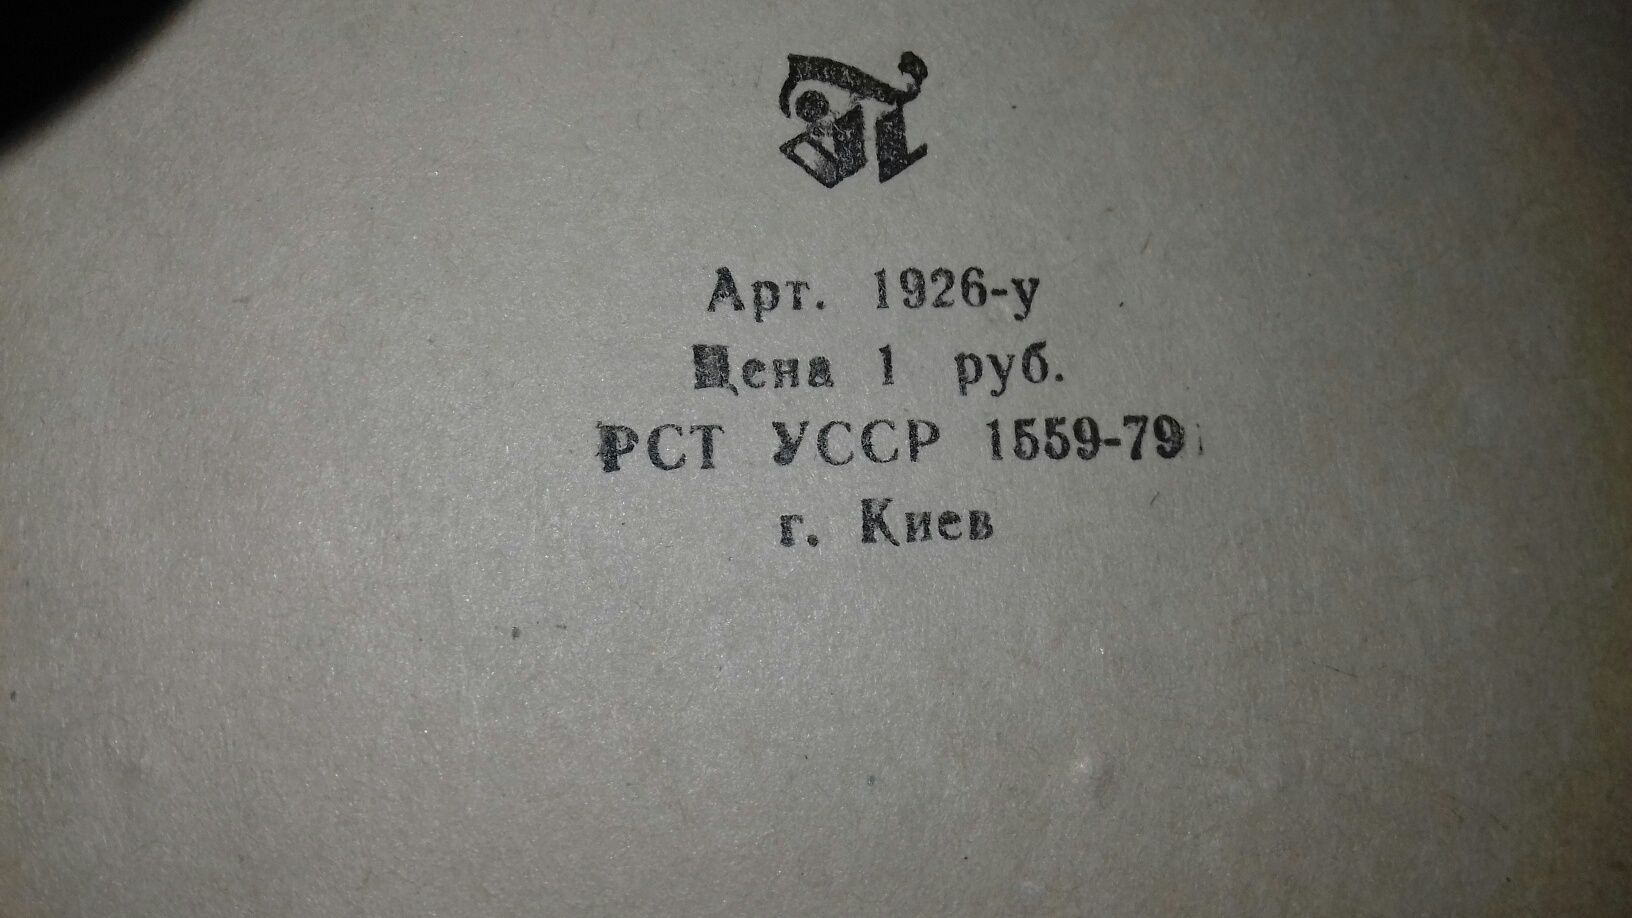 Блокнот, записная книжка - картотека "Моя библиотека" УССР